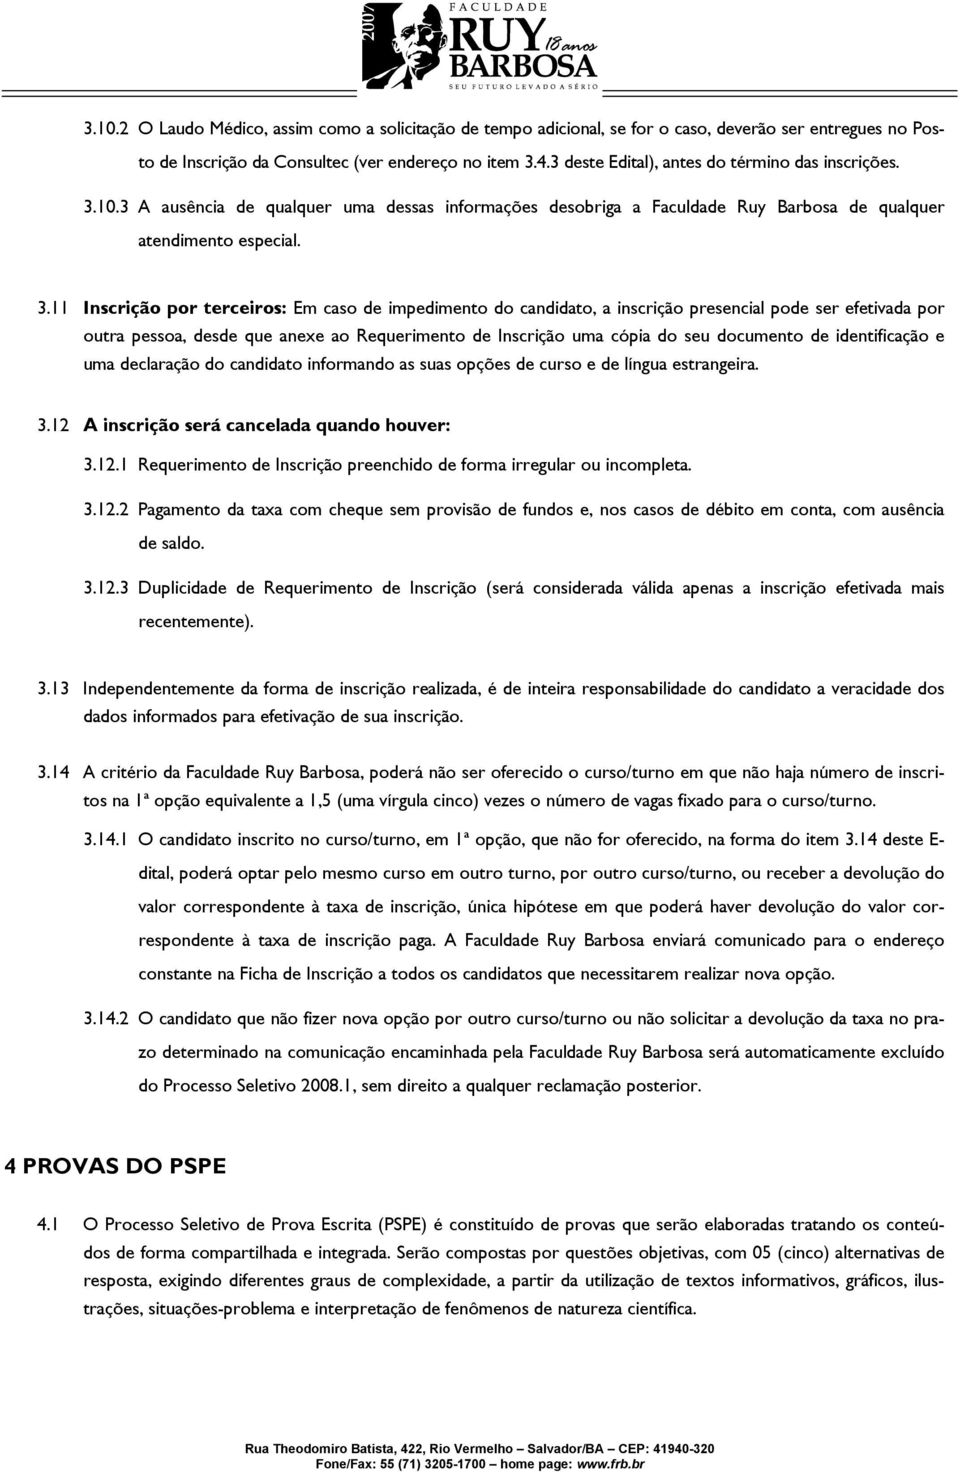 10.3 A ausência de qualquer uma dessas informações desobriga a Faculdade Ruy Barbosa de qualquer atendimento especial. 3.